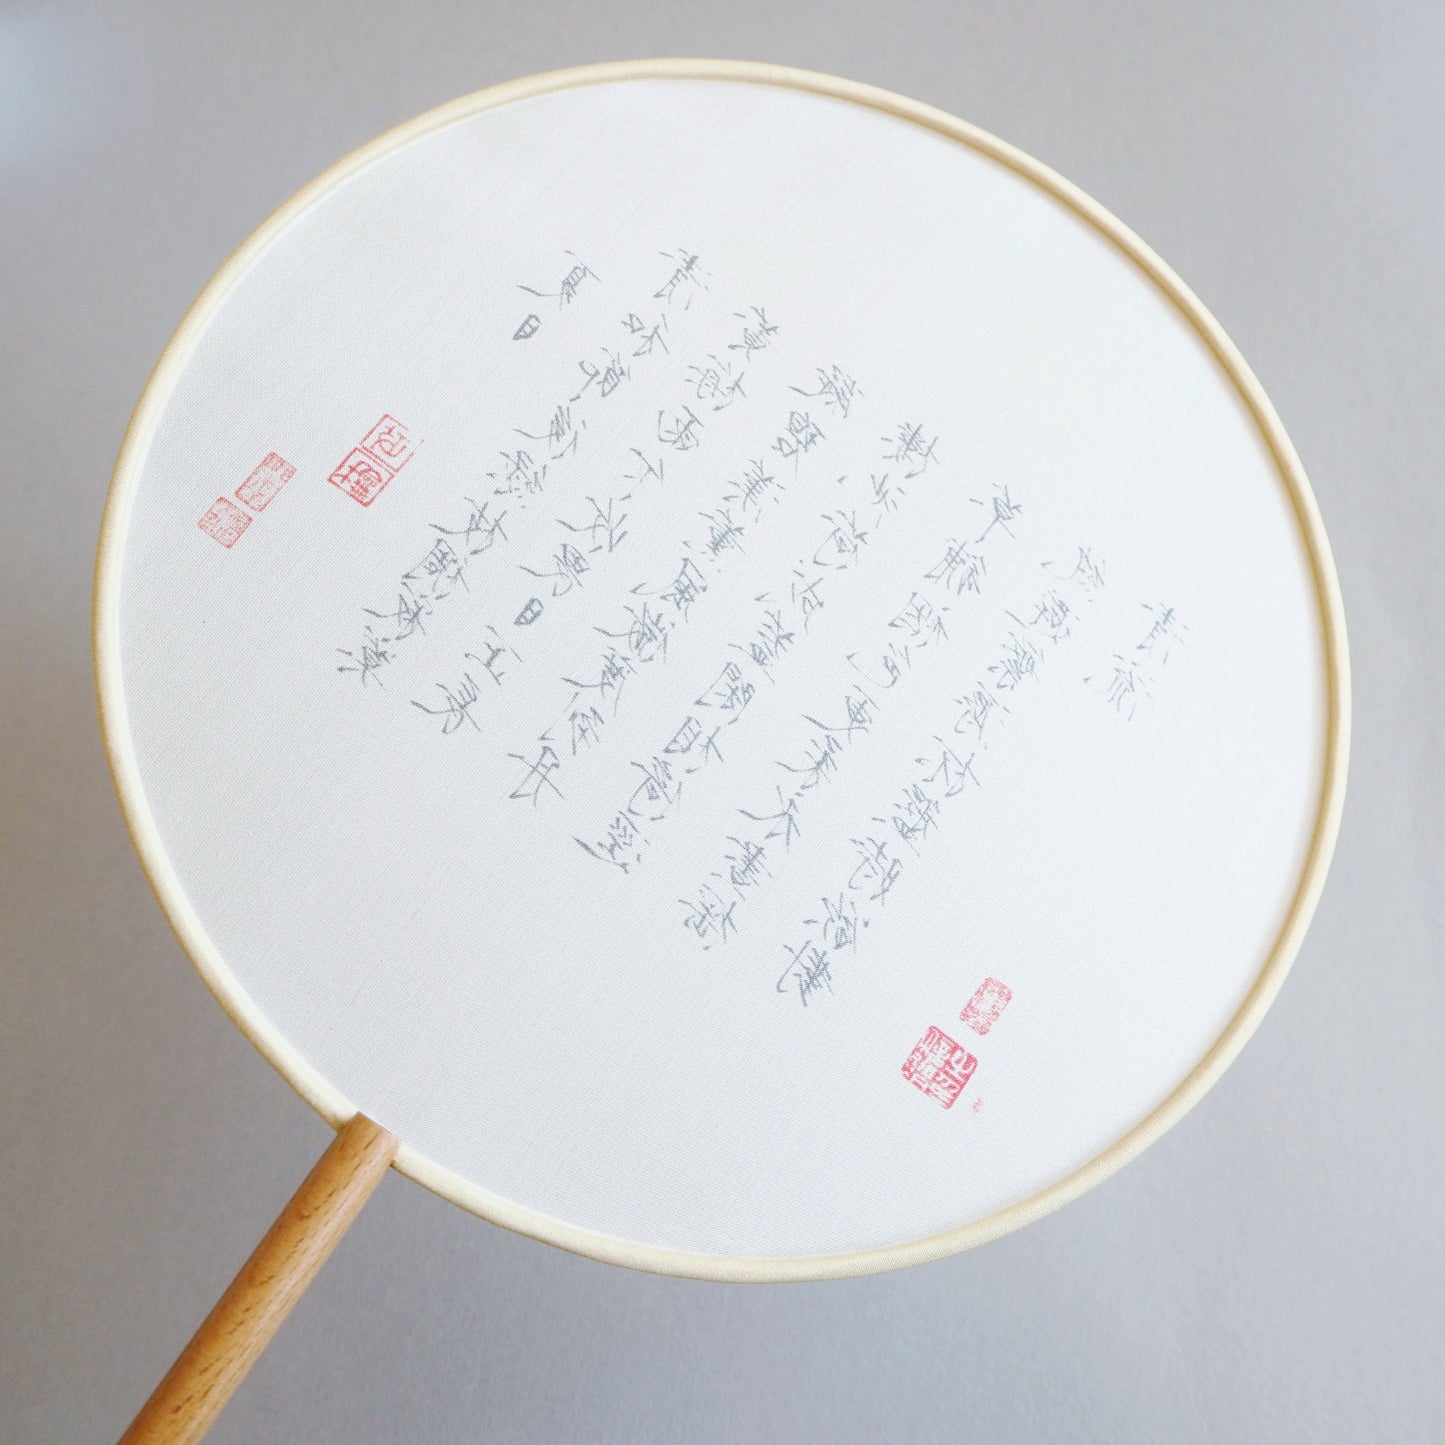 Chinese silk Fan - Crane Body Script - Folding fan - Lavender Home London